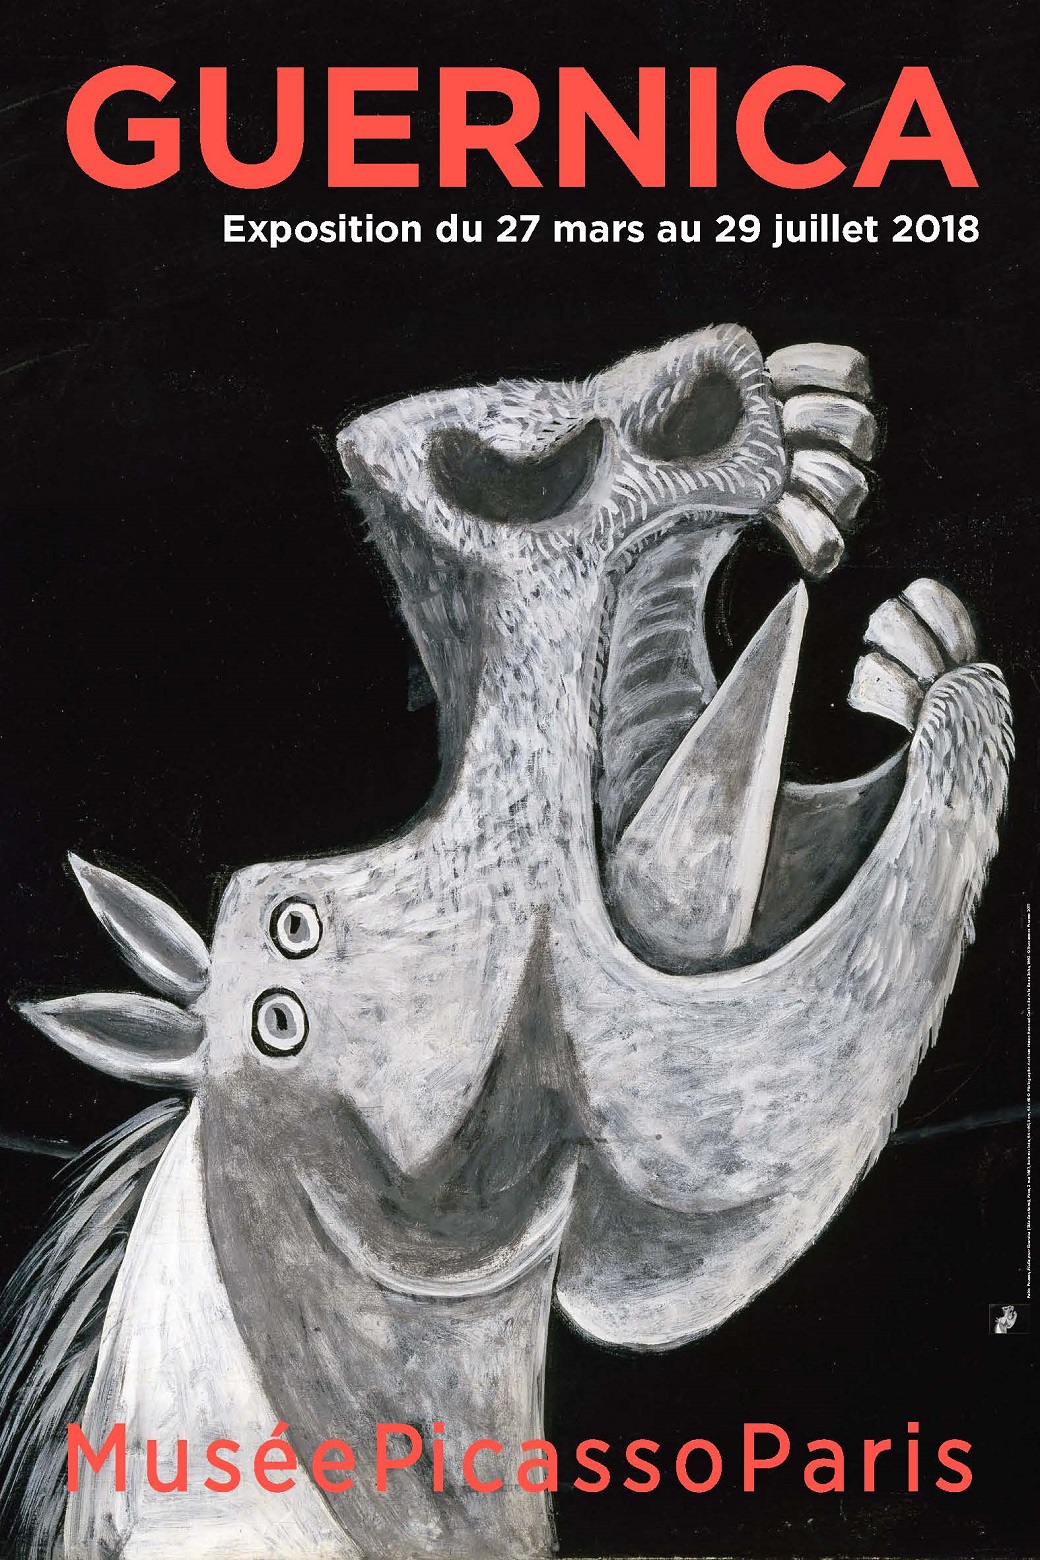 Guernica A Parigi Una Mostra Ricorda Lopera Più Celebre Di Picasso Universale Manifesto 9016